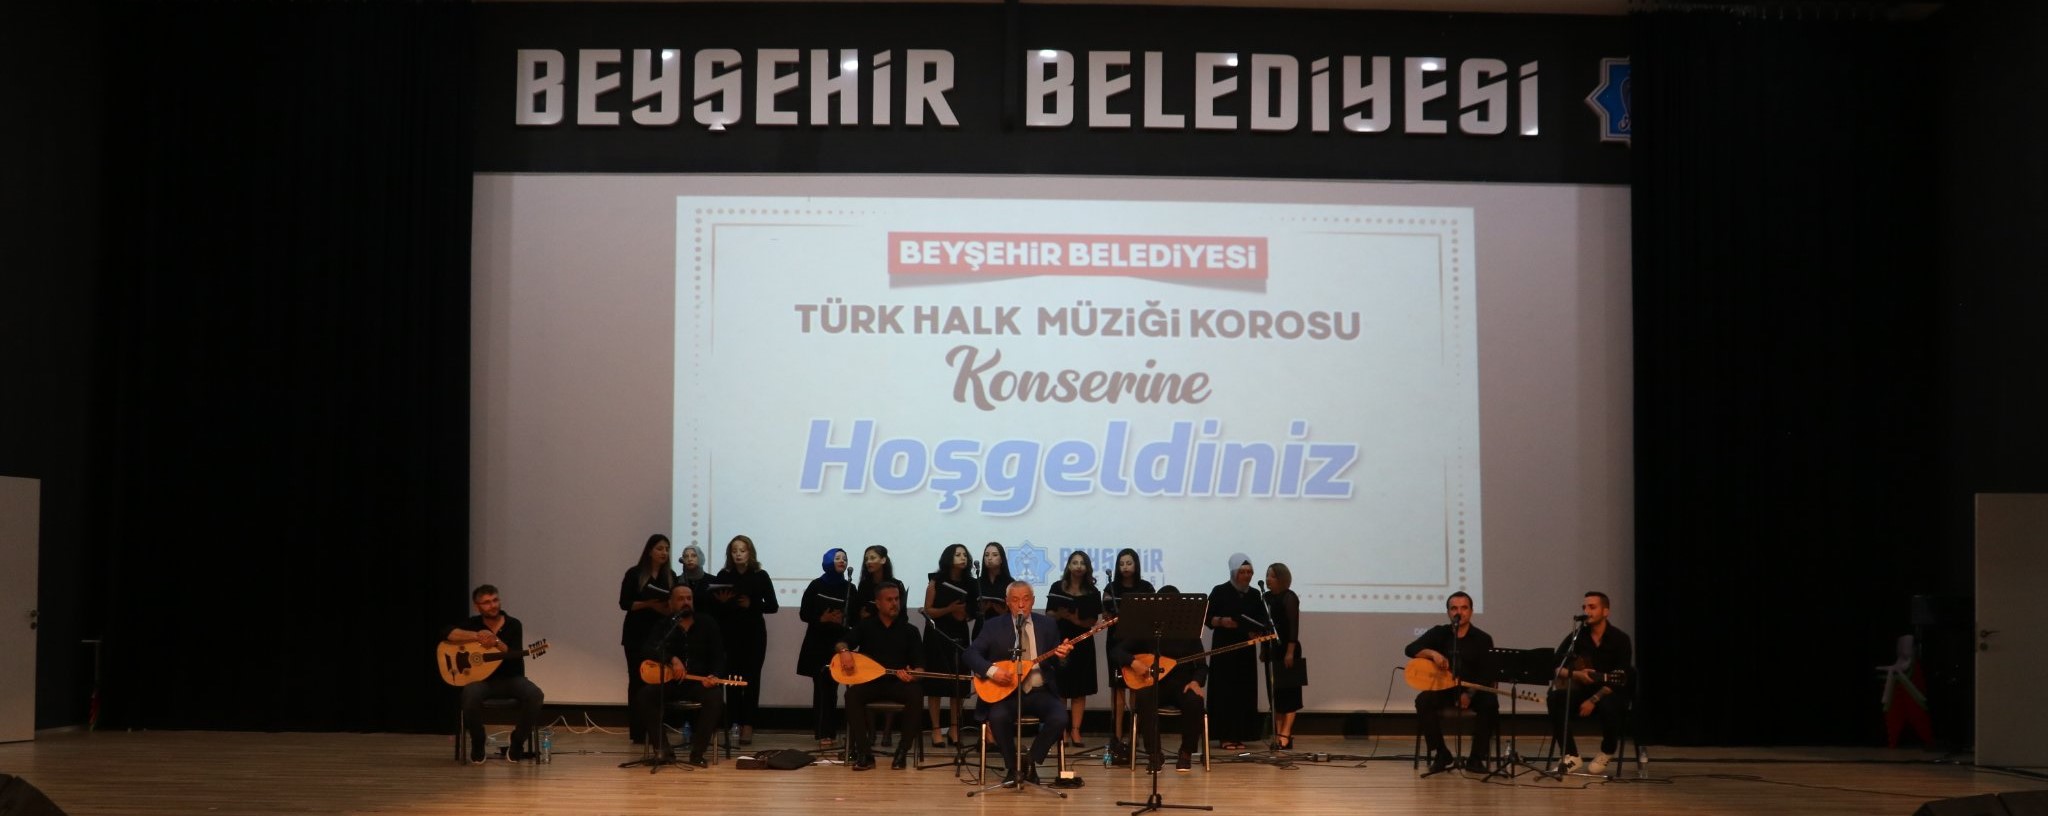 Beyşehir Belediyesi Türk Halk Müziği Korosu'ndan konser